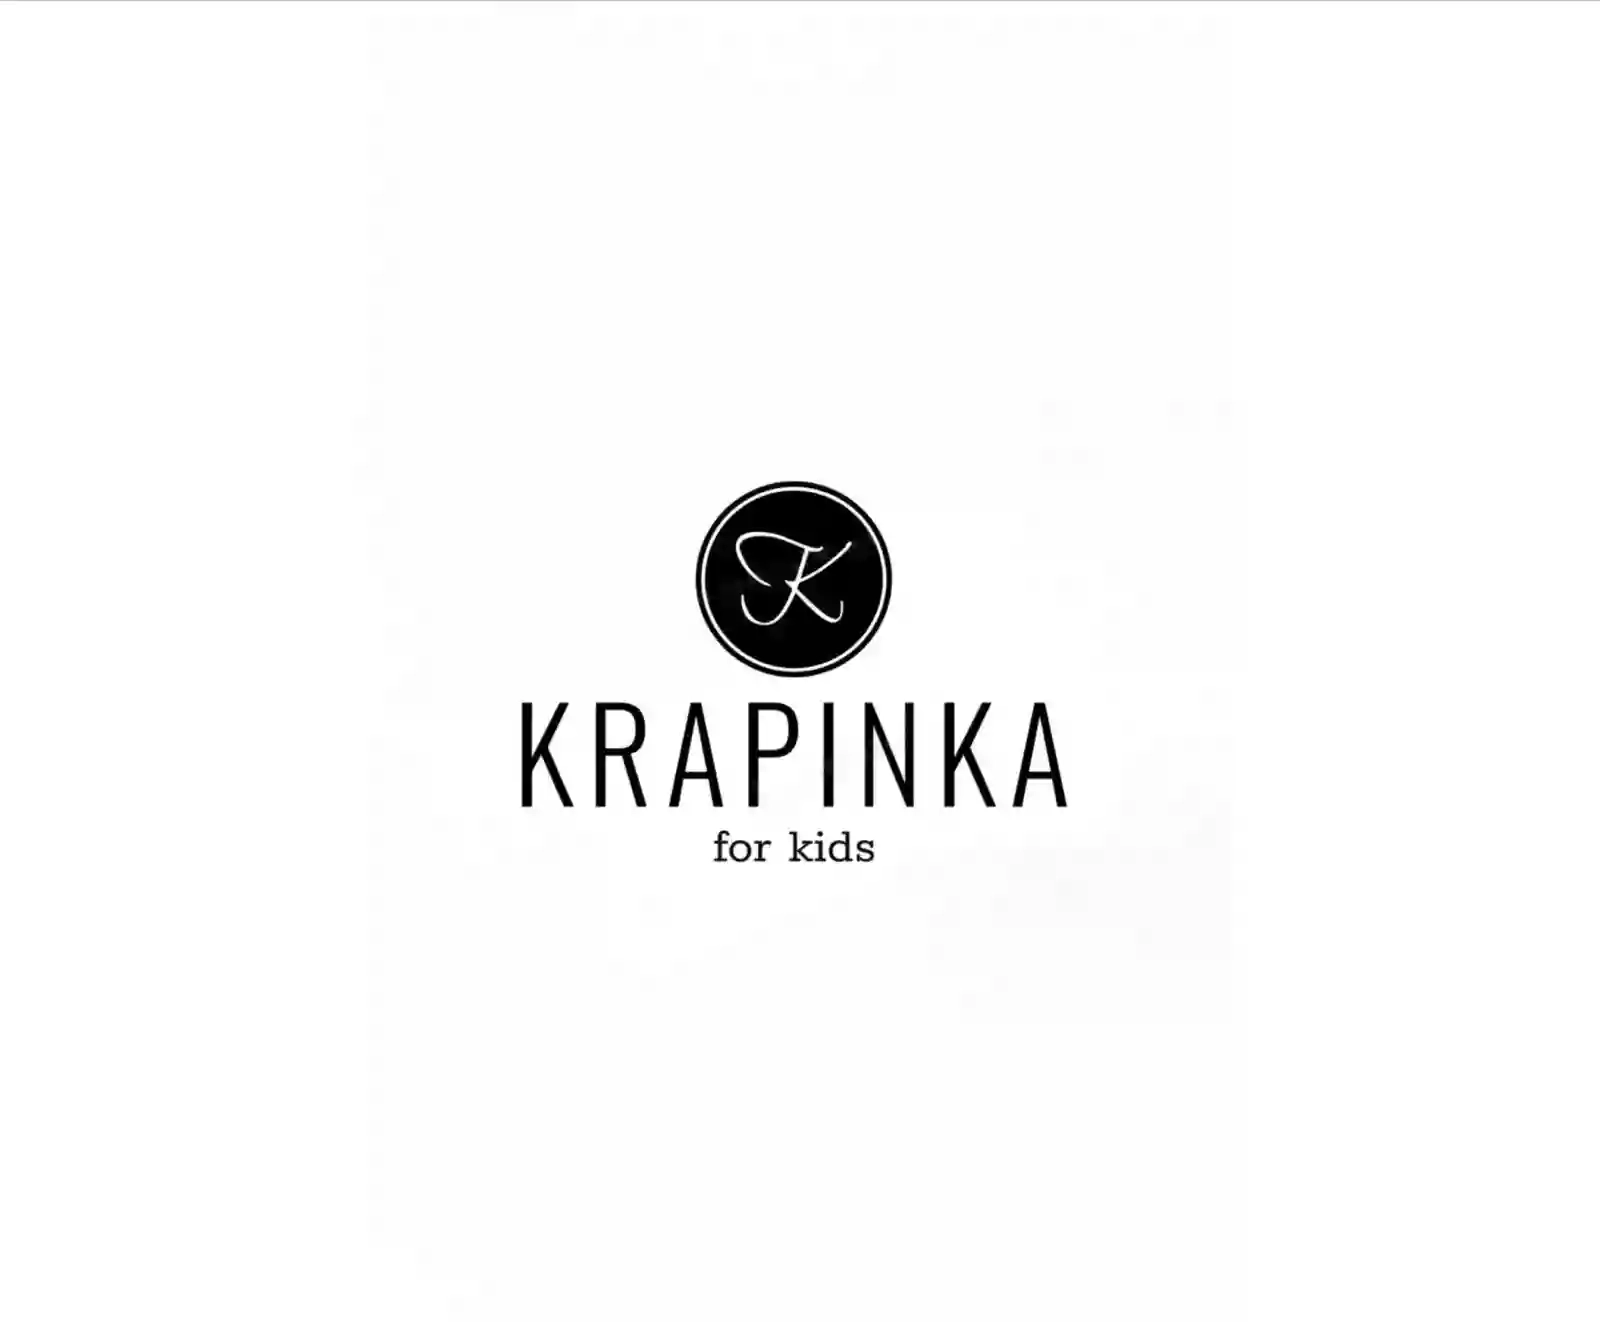 Krapinka